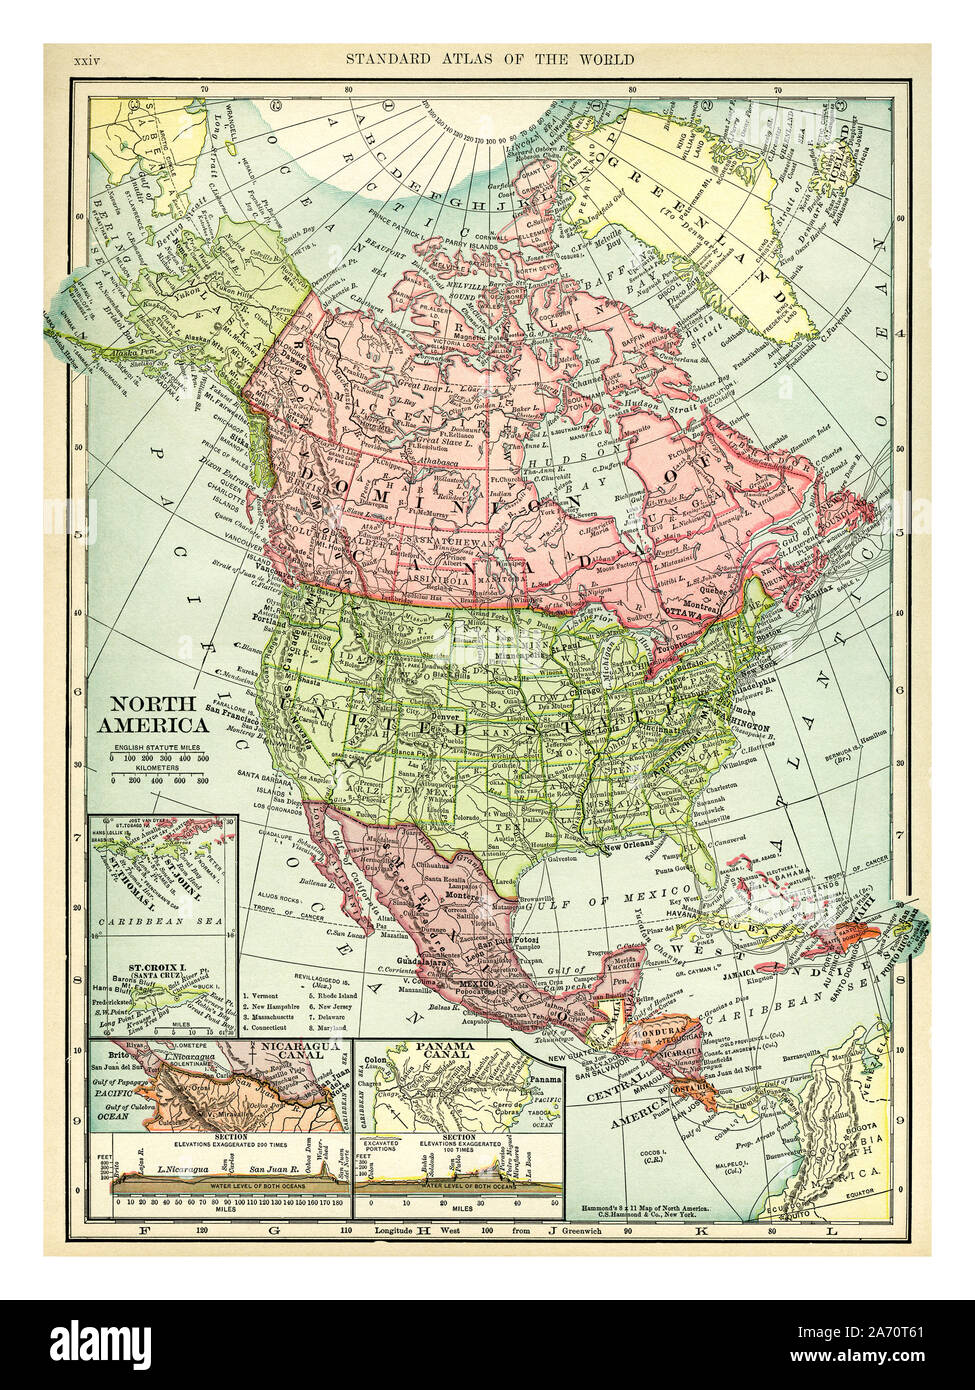 L'annata 1906 Mappa del Nord America. Paesi inclusi in questa mappa sono: Canada, Groenlandia, Stati Uniti, Messico, Guatemala, Honduras, Nicaragua, Costa Rica, Cuba e Haiti. C. S. Hammond mappa stampato e pubblicato 1906. Foto Stock